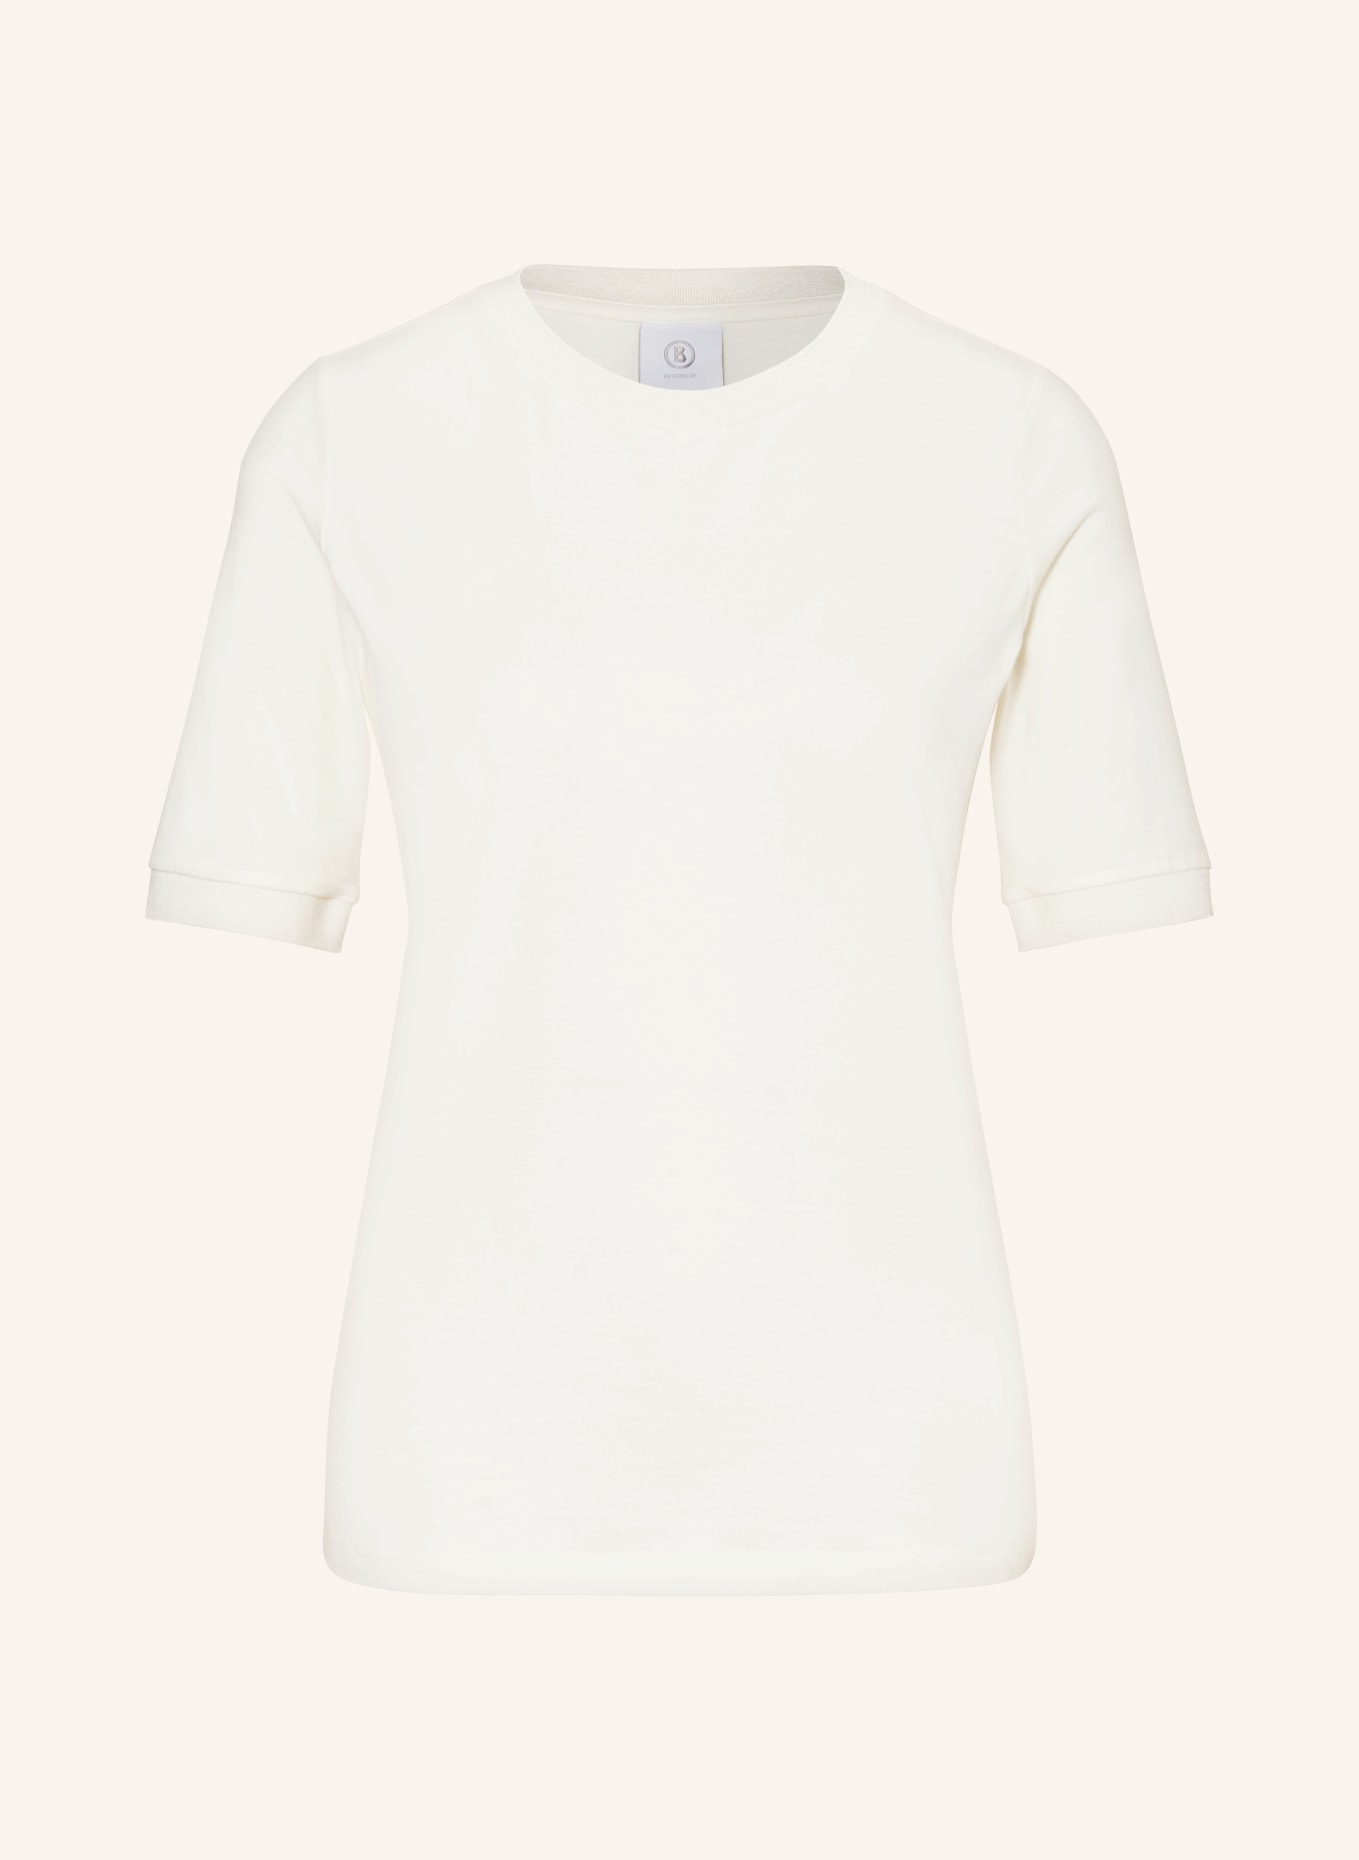 BOGNER T-Shirt ALEXI, Farbe: WEISS (Bild 1)